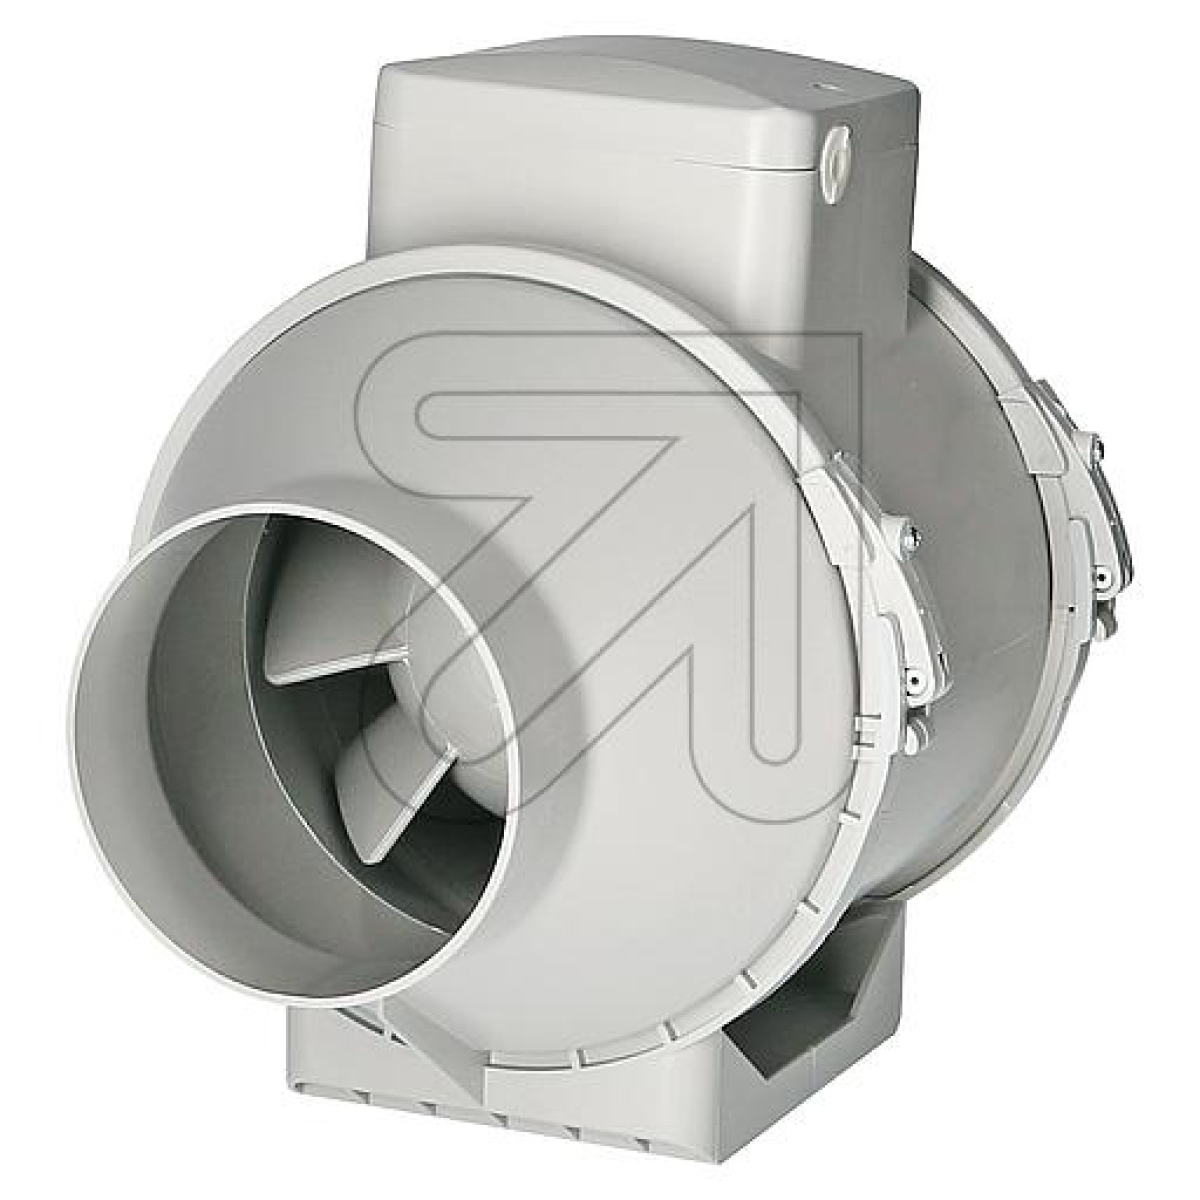 SIKUEinbau-Ventilator SIKU TT 100 PRO